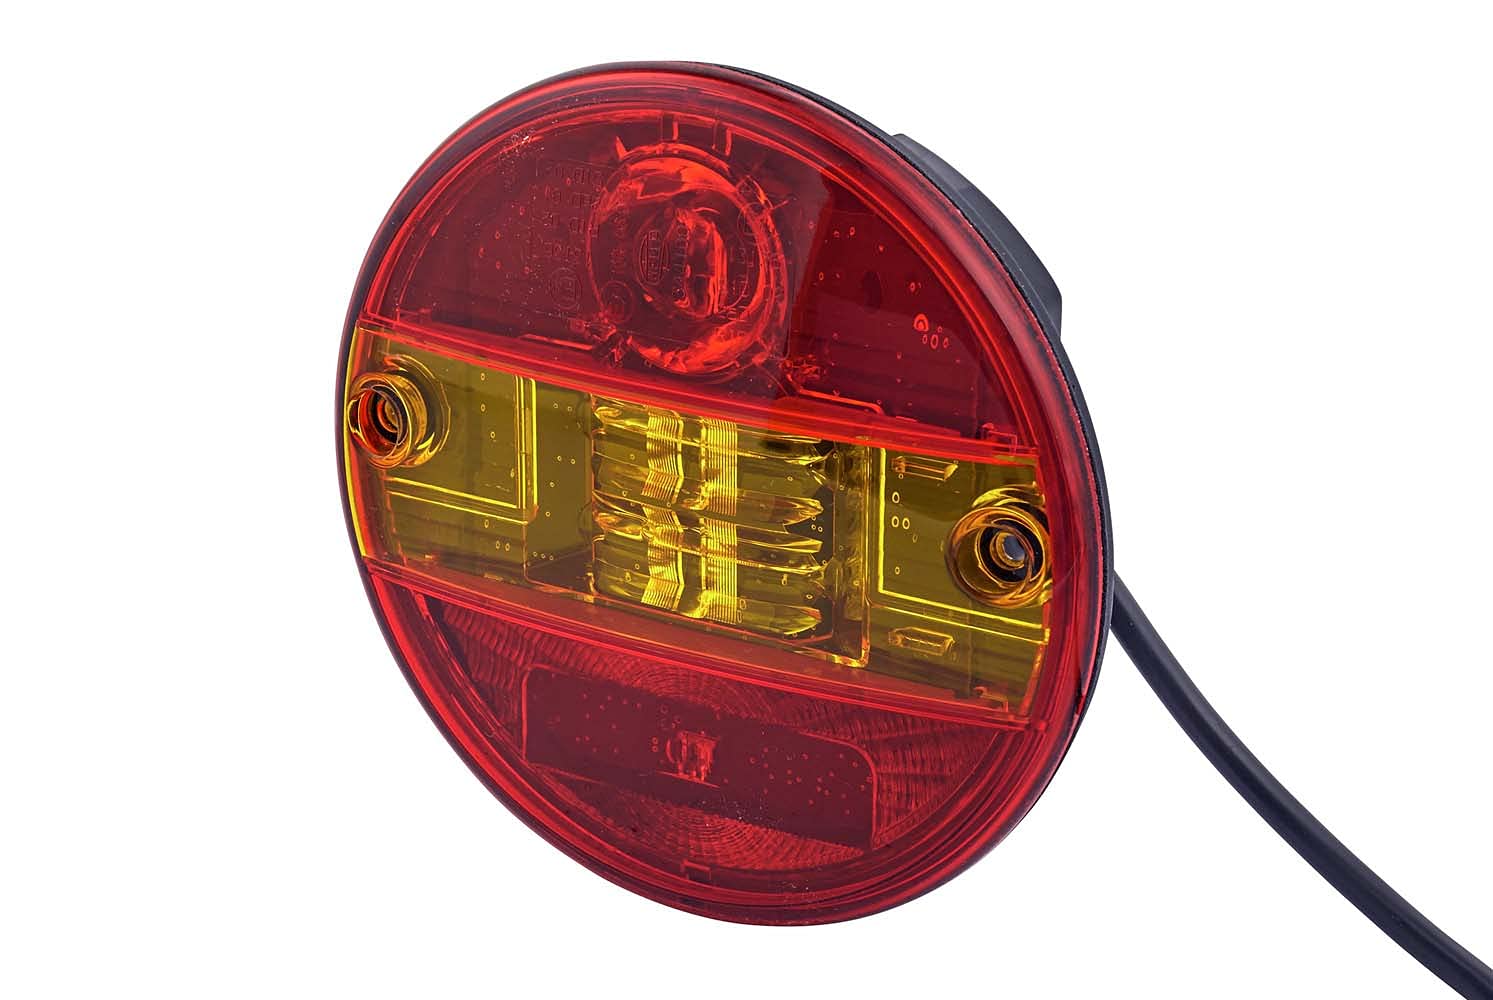 HELLA Rückleuchte - LED - Anhänger Beleuchtung - 24V / 12V - Einbau/geschraubt - ECE/ADR/GGVS - Lichtscheibenfarbe: rot/gelb - Kabel: 500mm - links/rechts - Menge: 1 - 2SD 344 100-001 von Hella